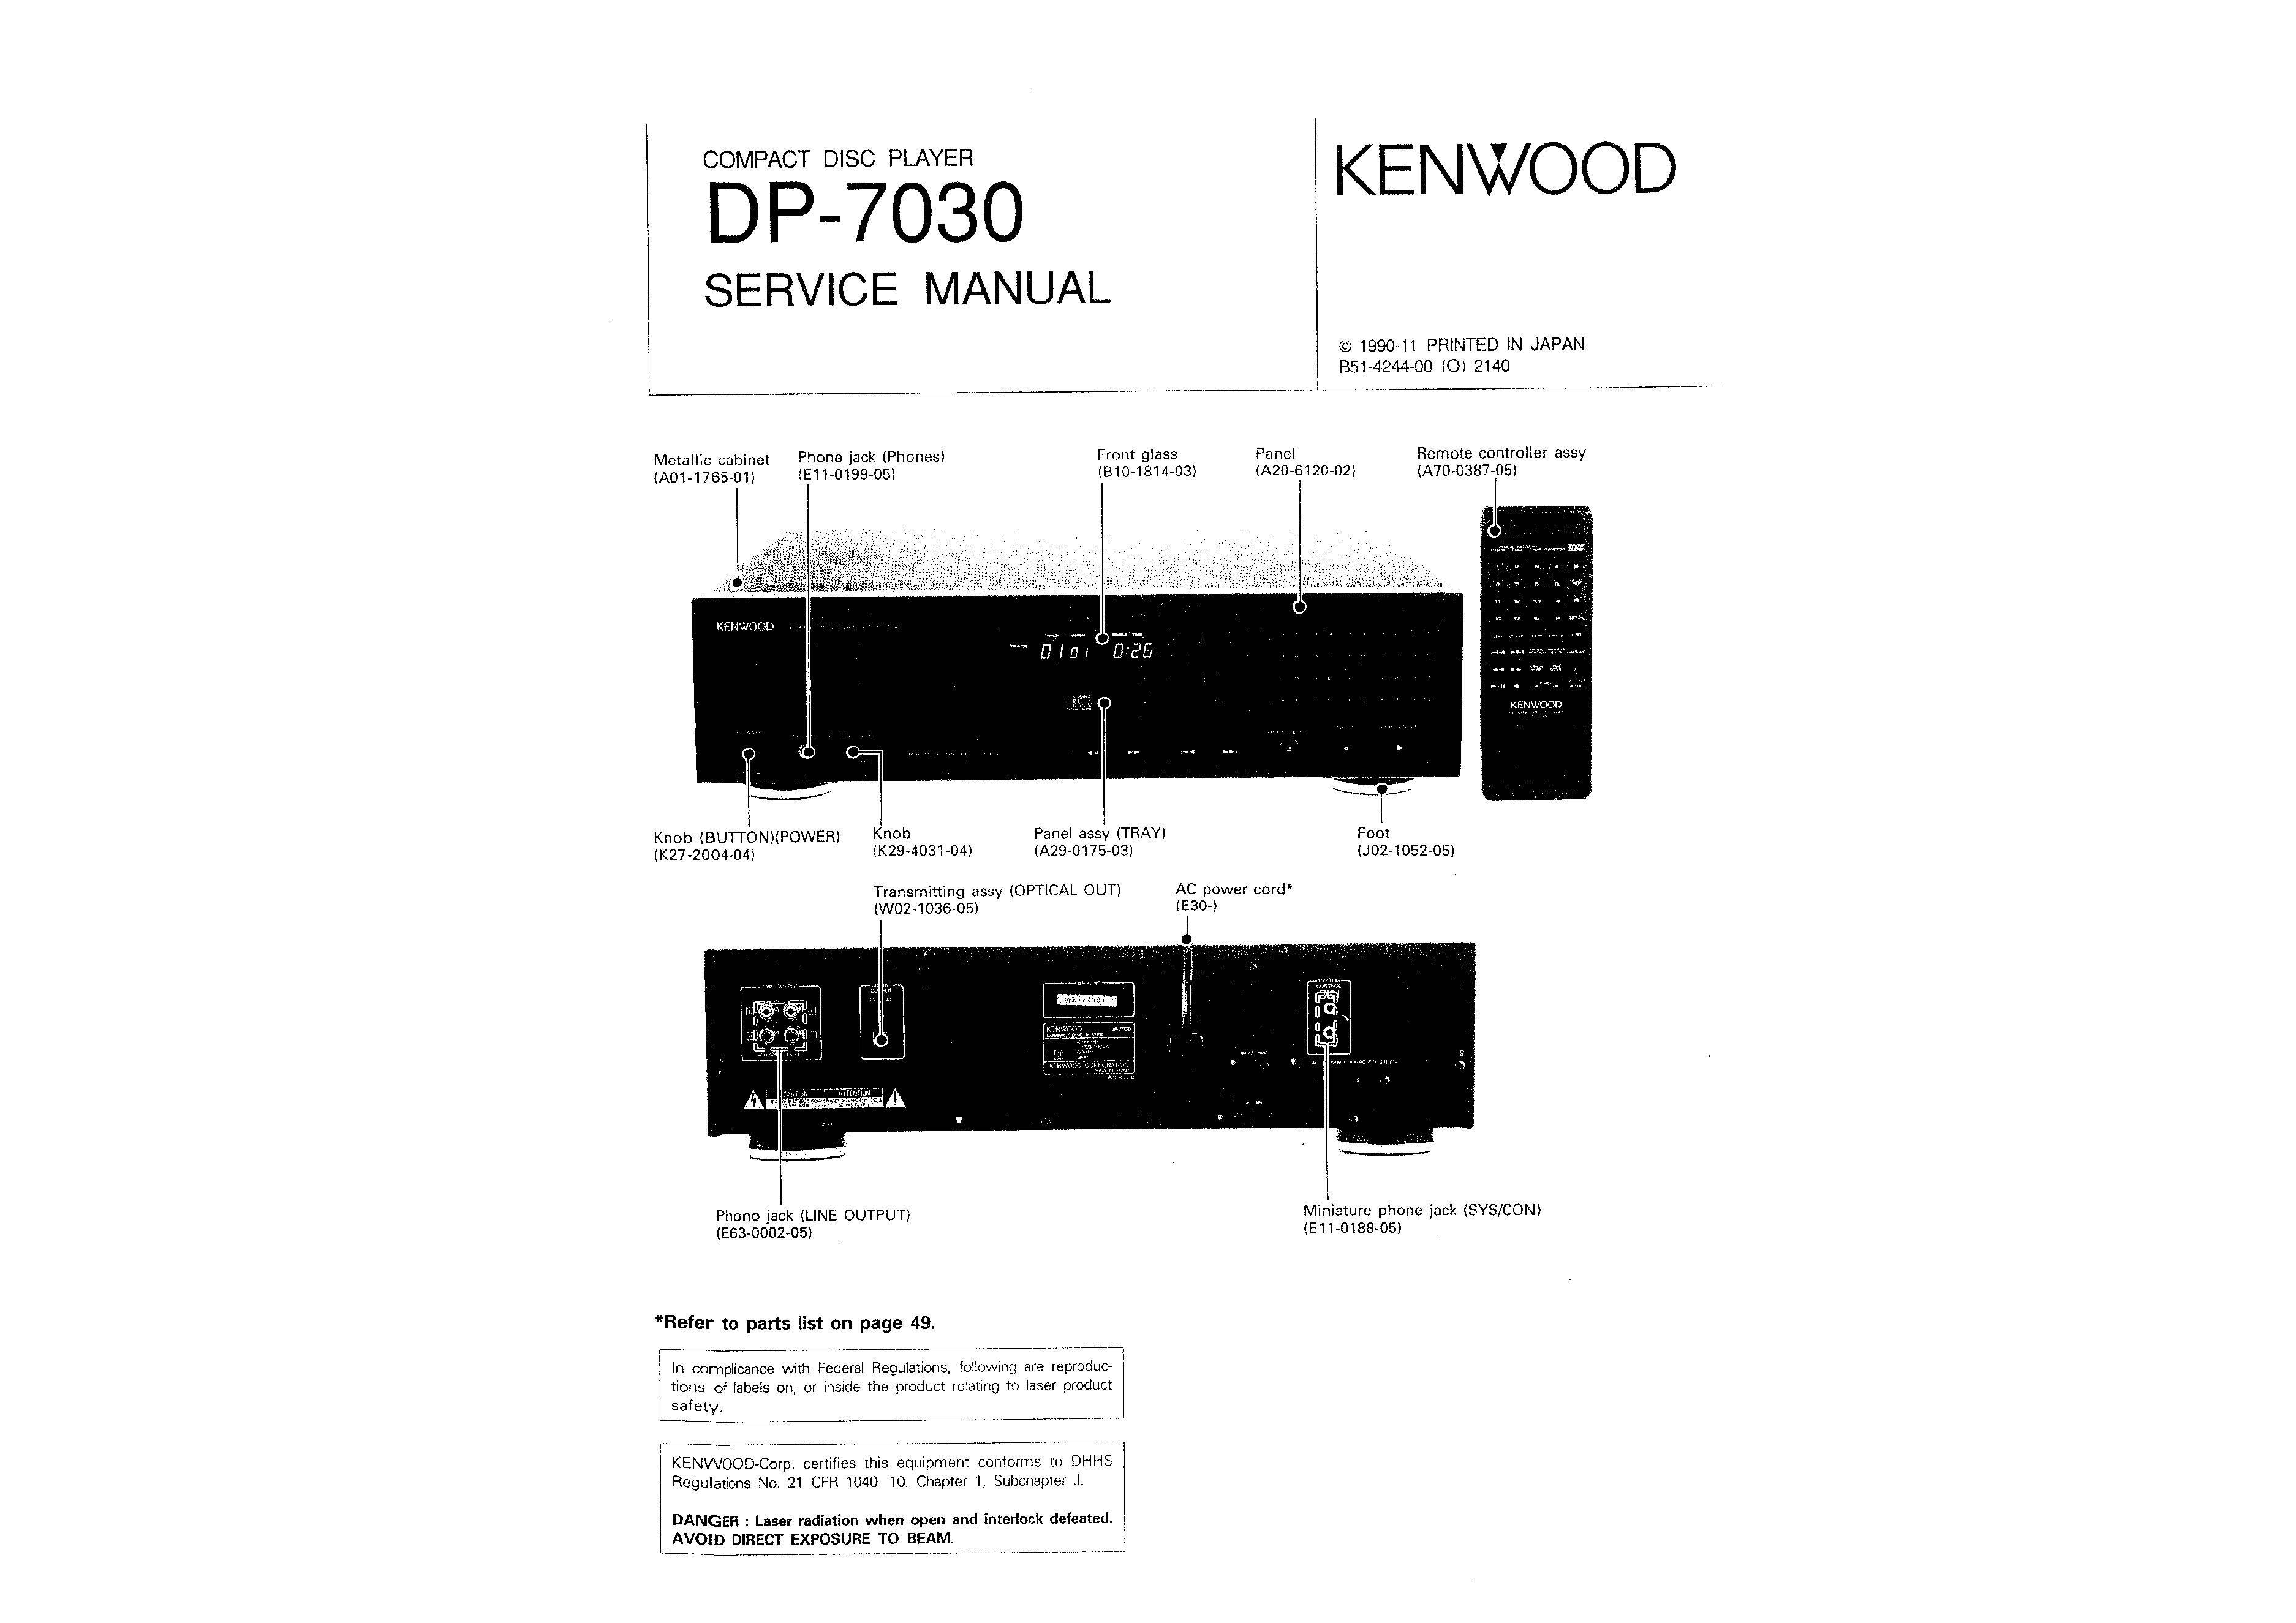 Kenwood DP-7030